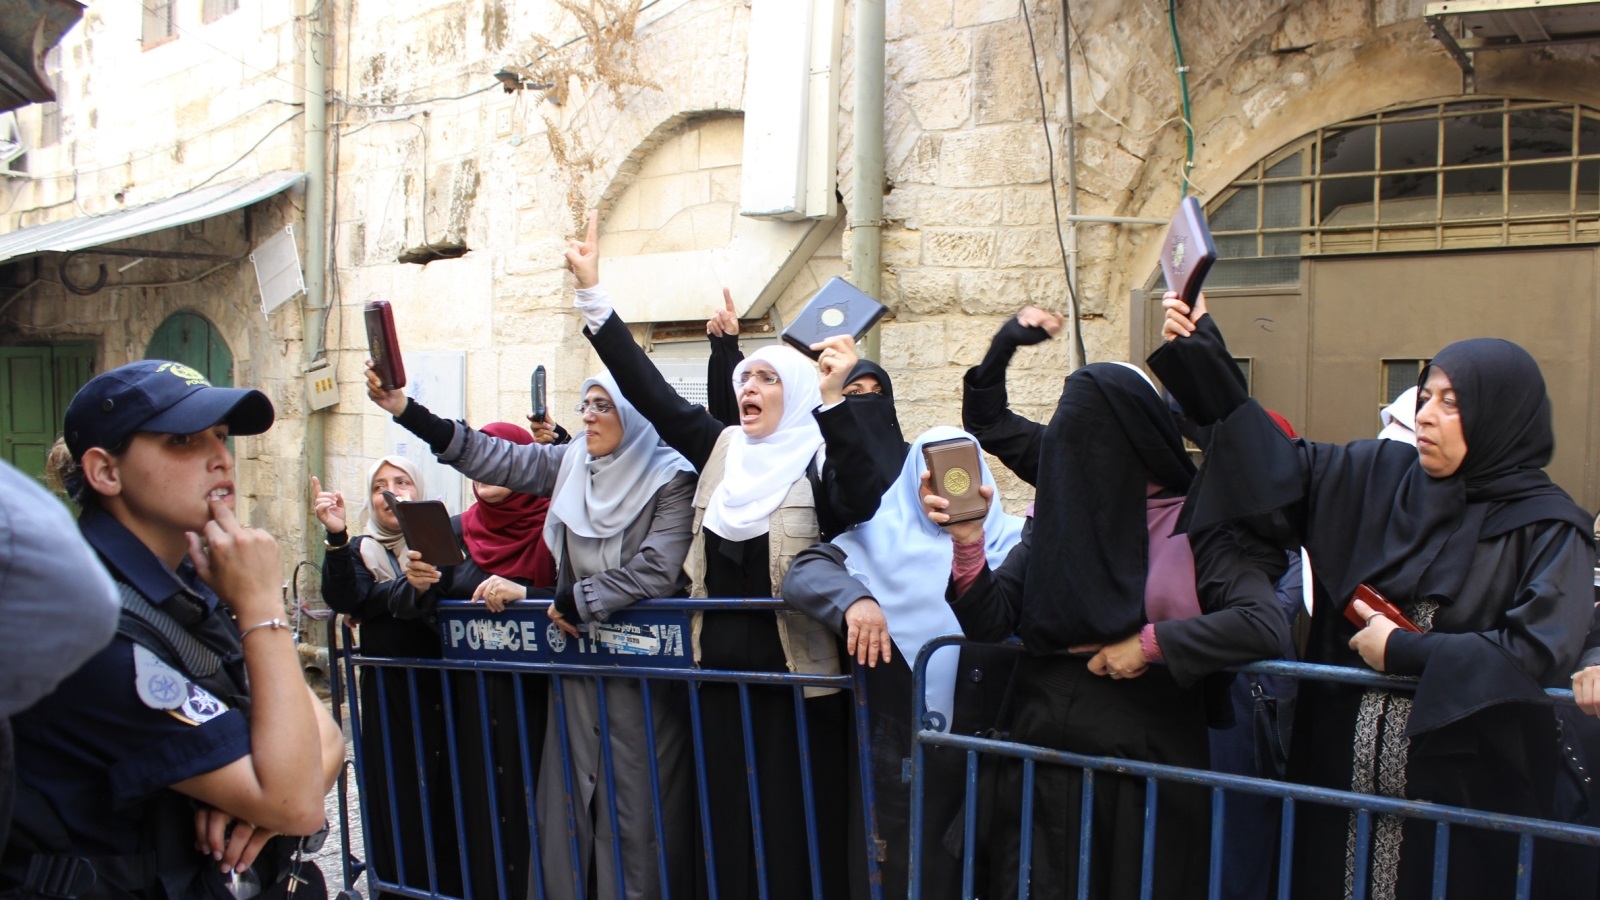 في القدس امرأةٌ تصنع ما عجزَ عنه رجال الأُمة في رباطها على عتبات المسجد الأقصى، تاركةً حياتها الشخصية خلفها